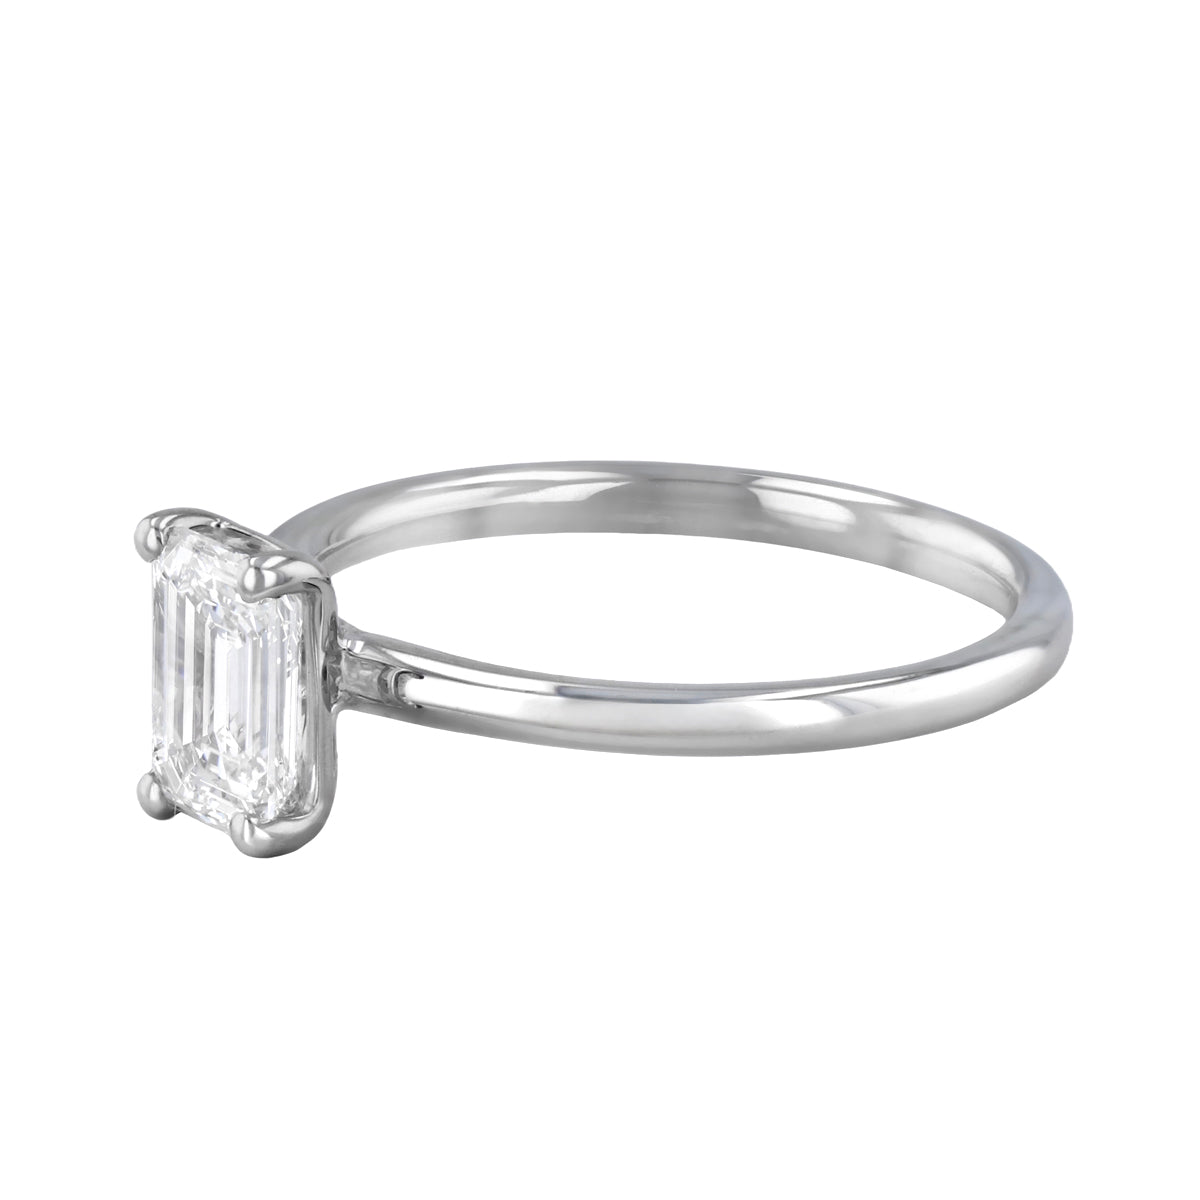 0-25ct-sofia-emerald-cut-solitaire-diamond-engagement-ring-platinum